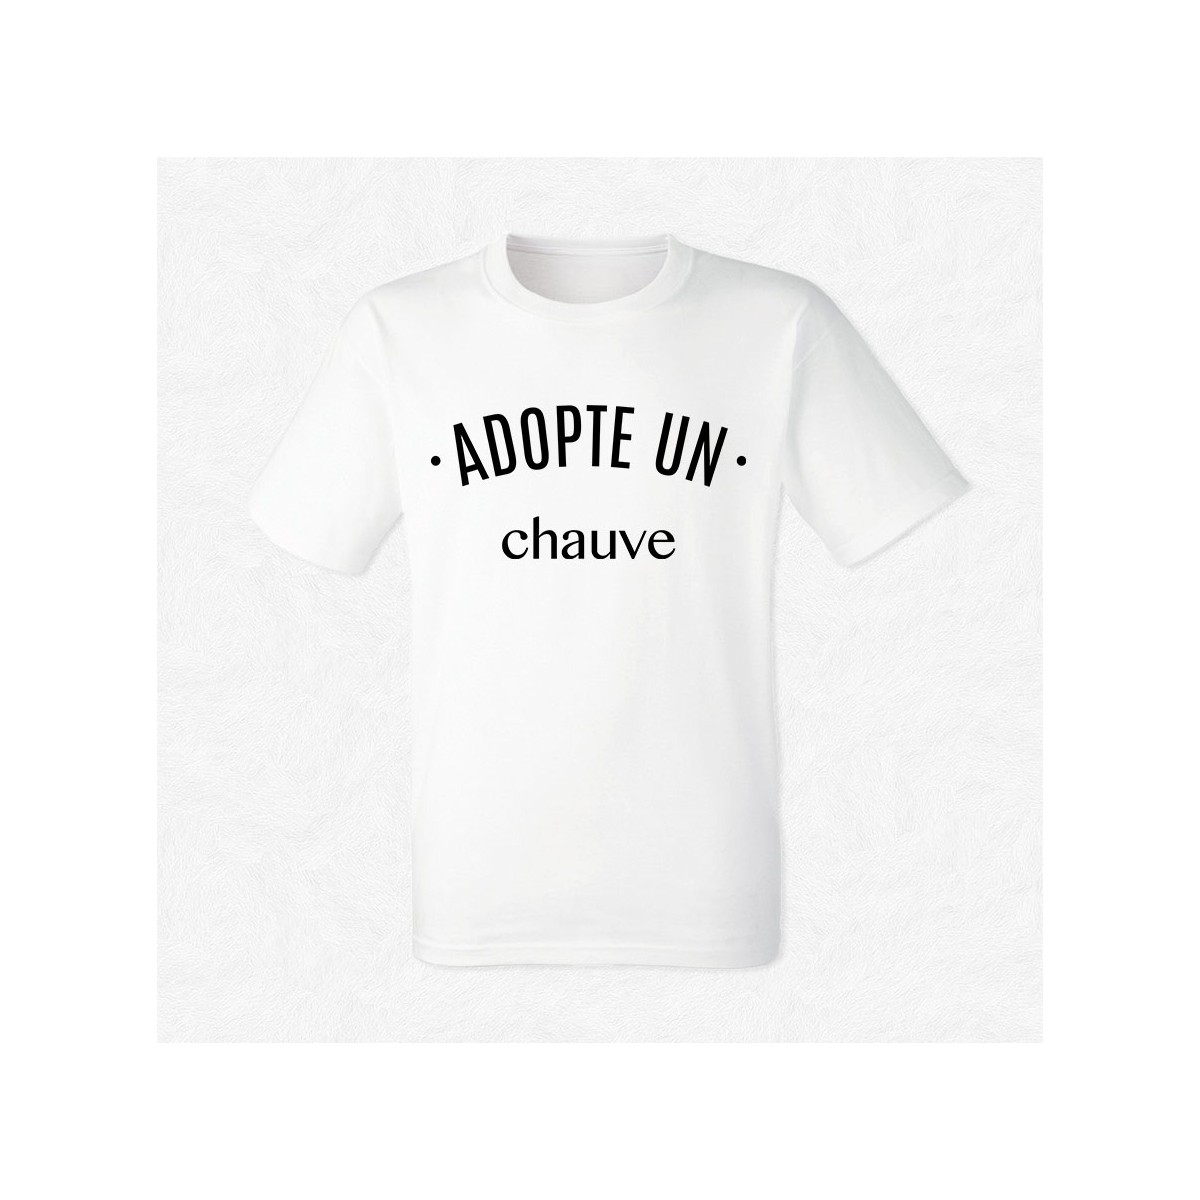 T-shirt Adopte un chauve